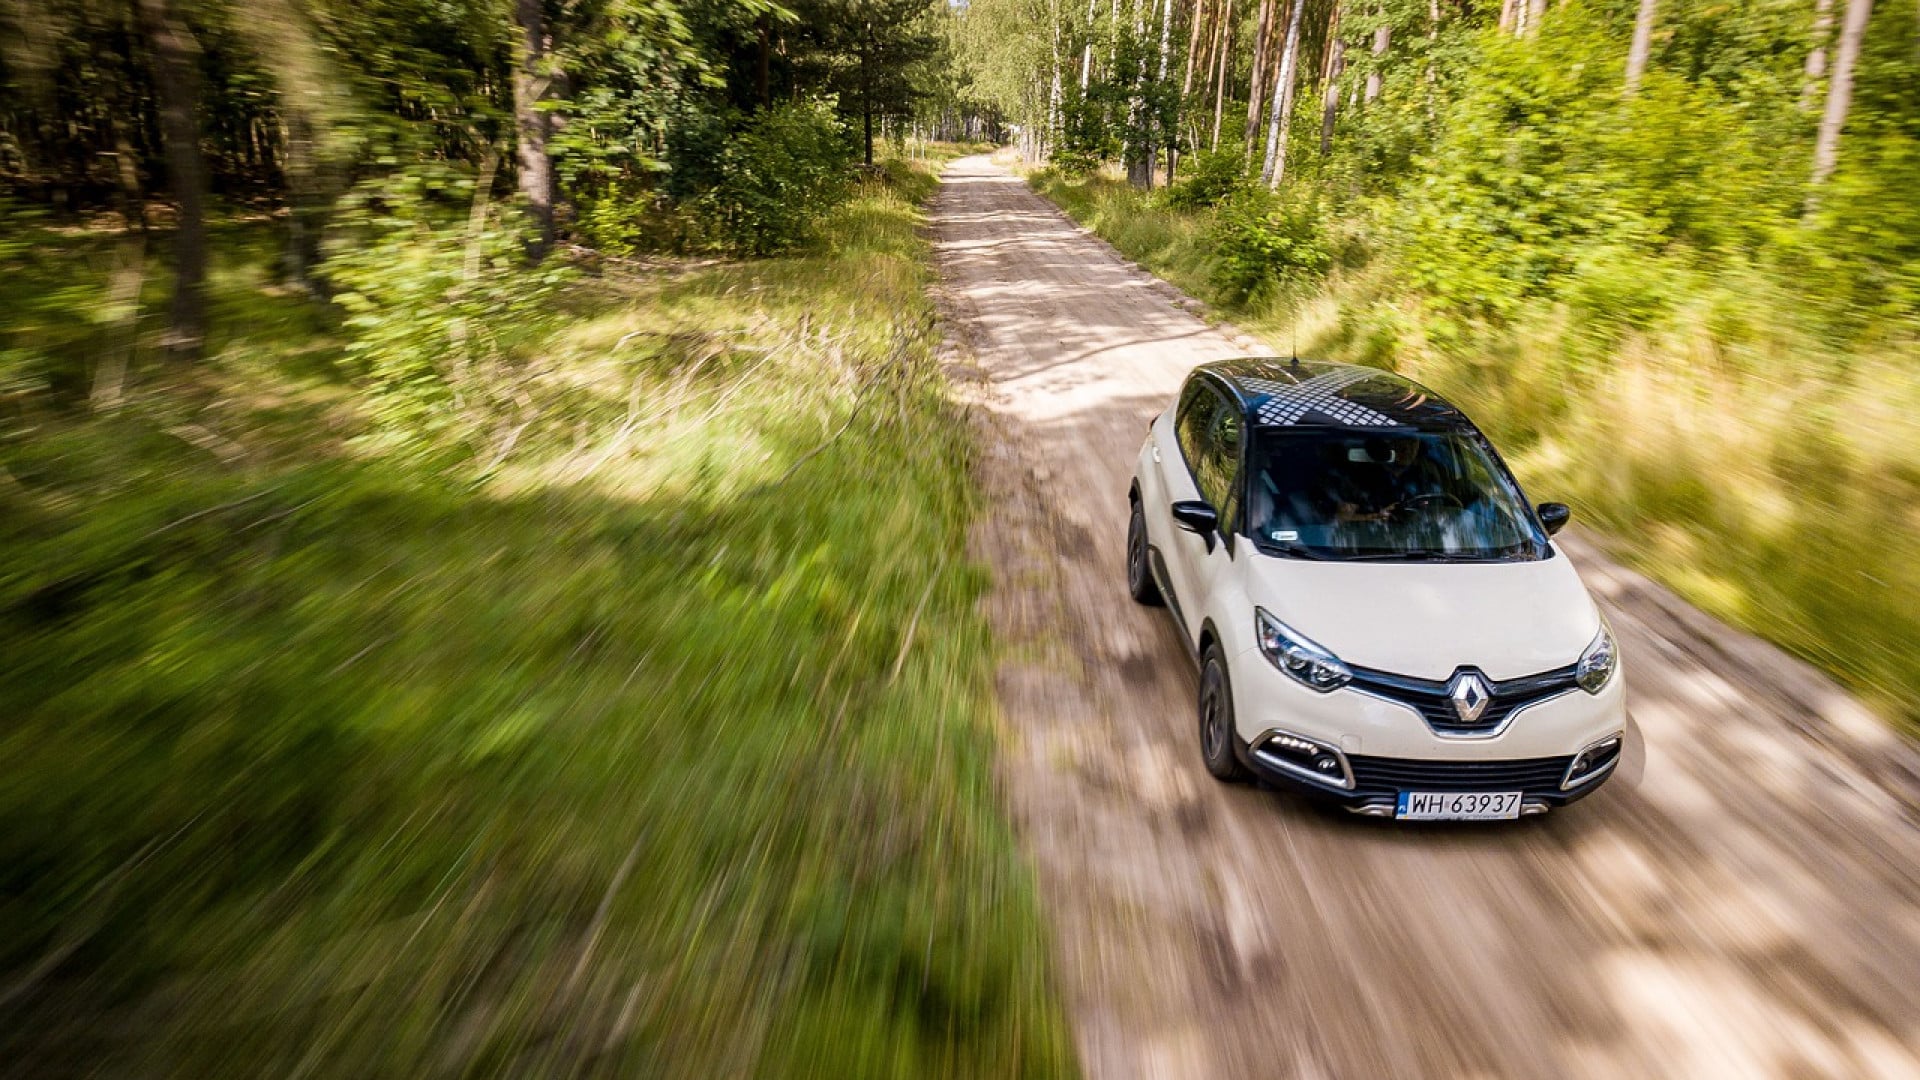 Achat d’un Renault Captur occasion : ce qu’il faut savoir